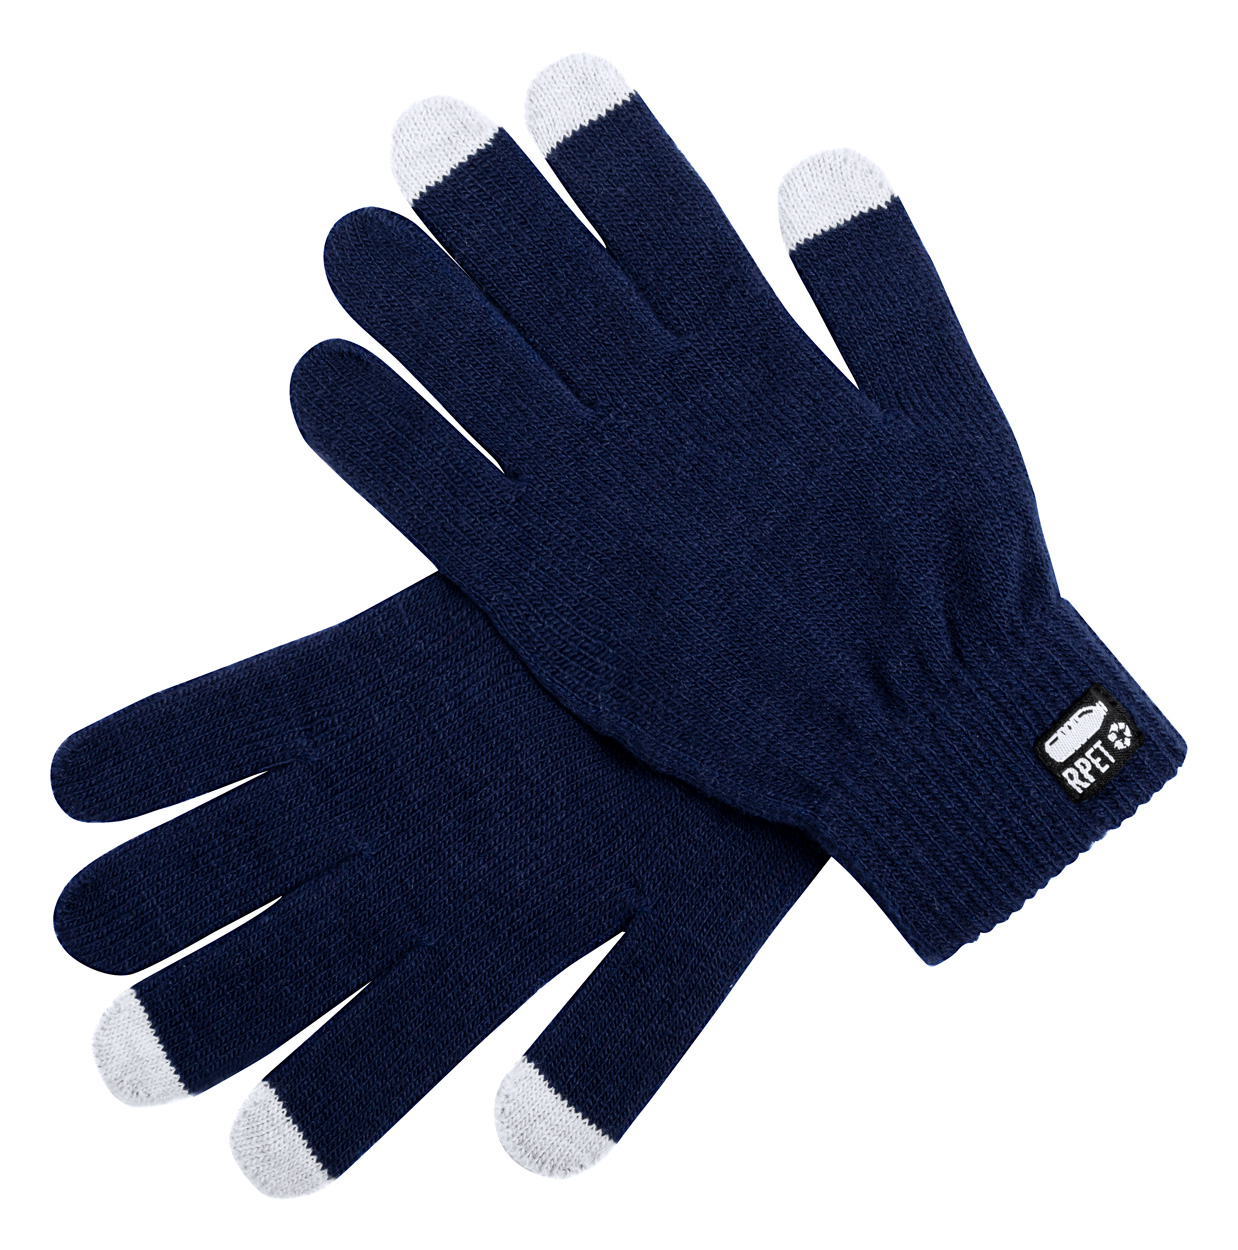 Polyesterové zimní rukavice DESPIL s úpravou pro dotykové displeje